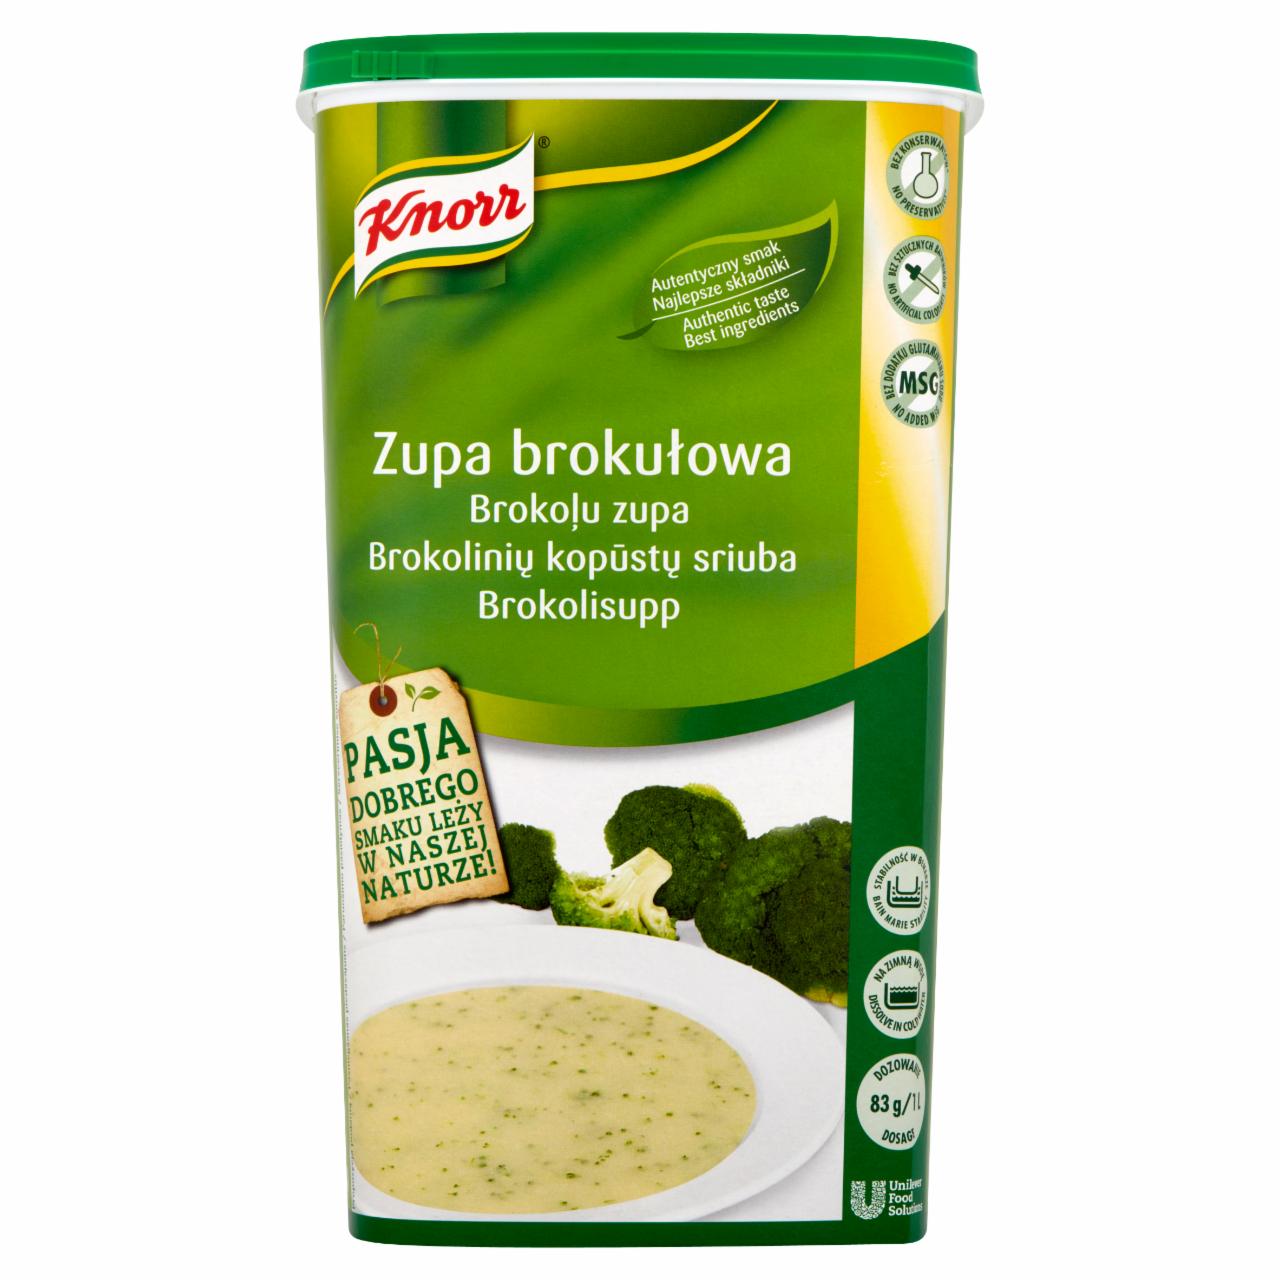 Zdjęcia - Knorr Zupa brokułowa 1,3 kg